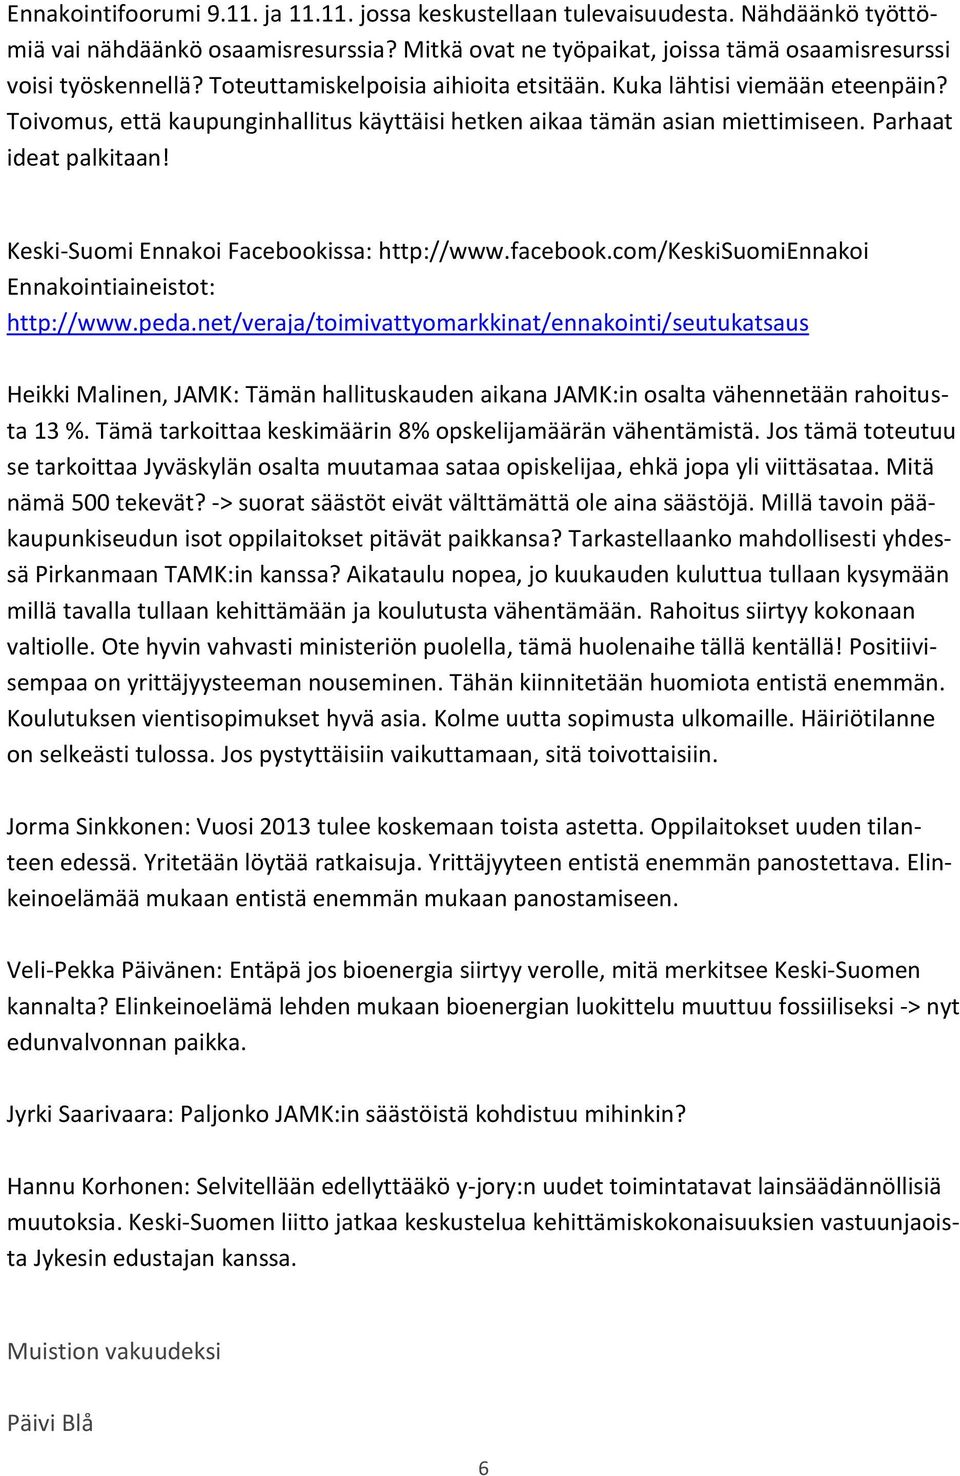 Keski-Suomi Ennakoi Facebookissa: http://www.facebook.com/keskisuomiennakoi Ennakointiaineistot: http://www.peda.